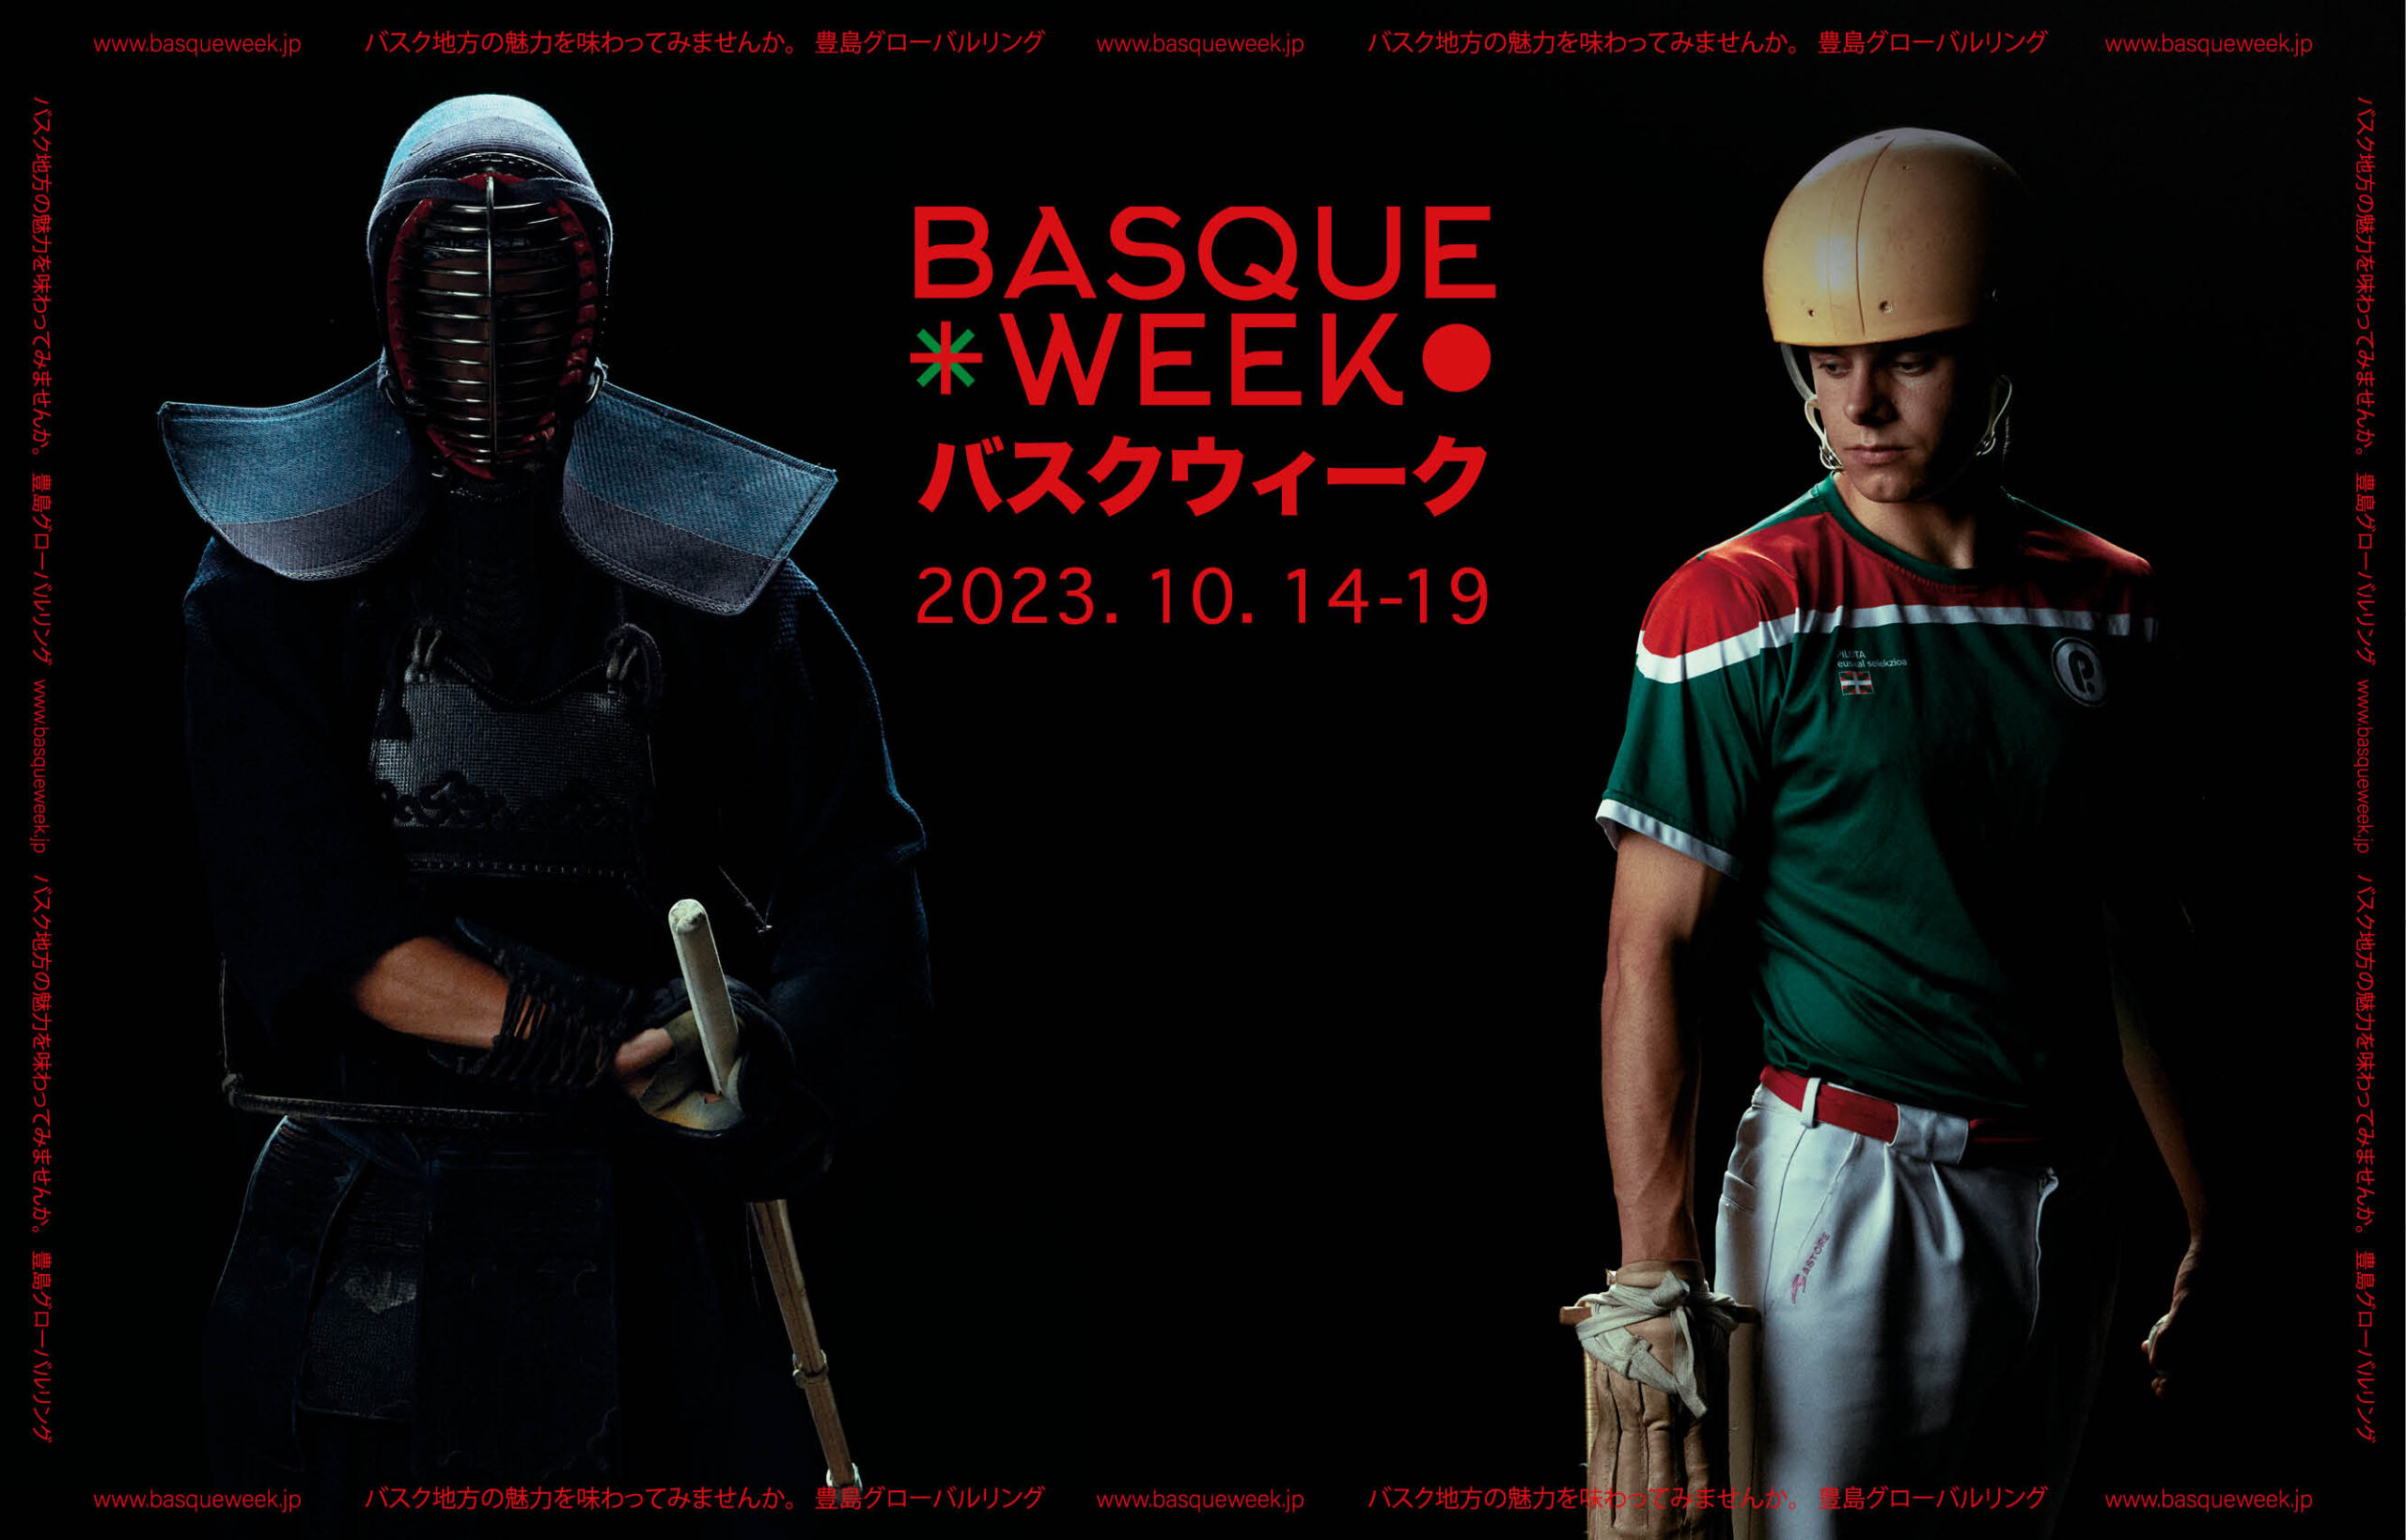 Basque Week Japan - Global Ring Theatre - Toshima10